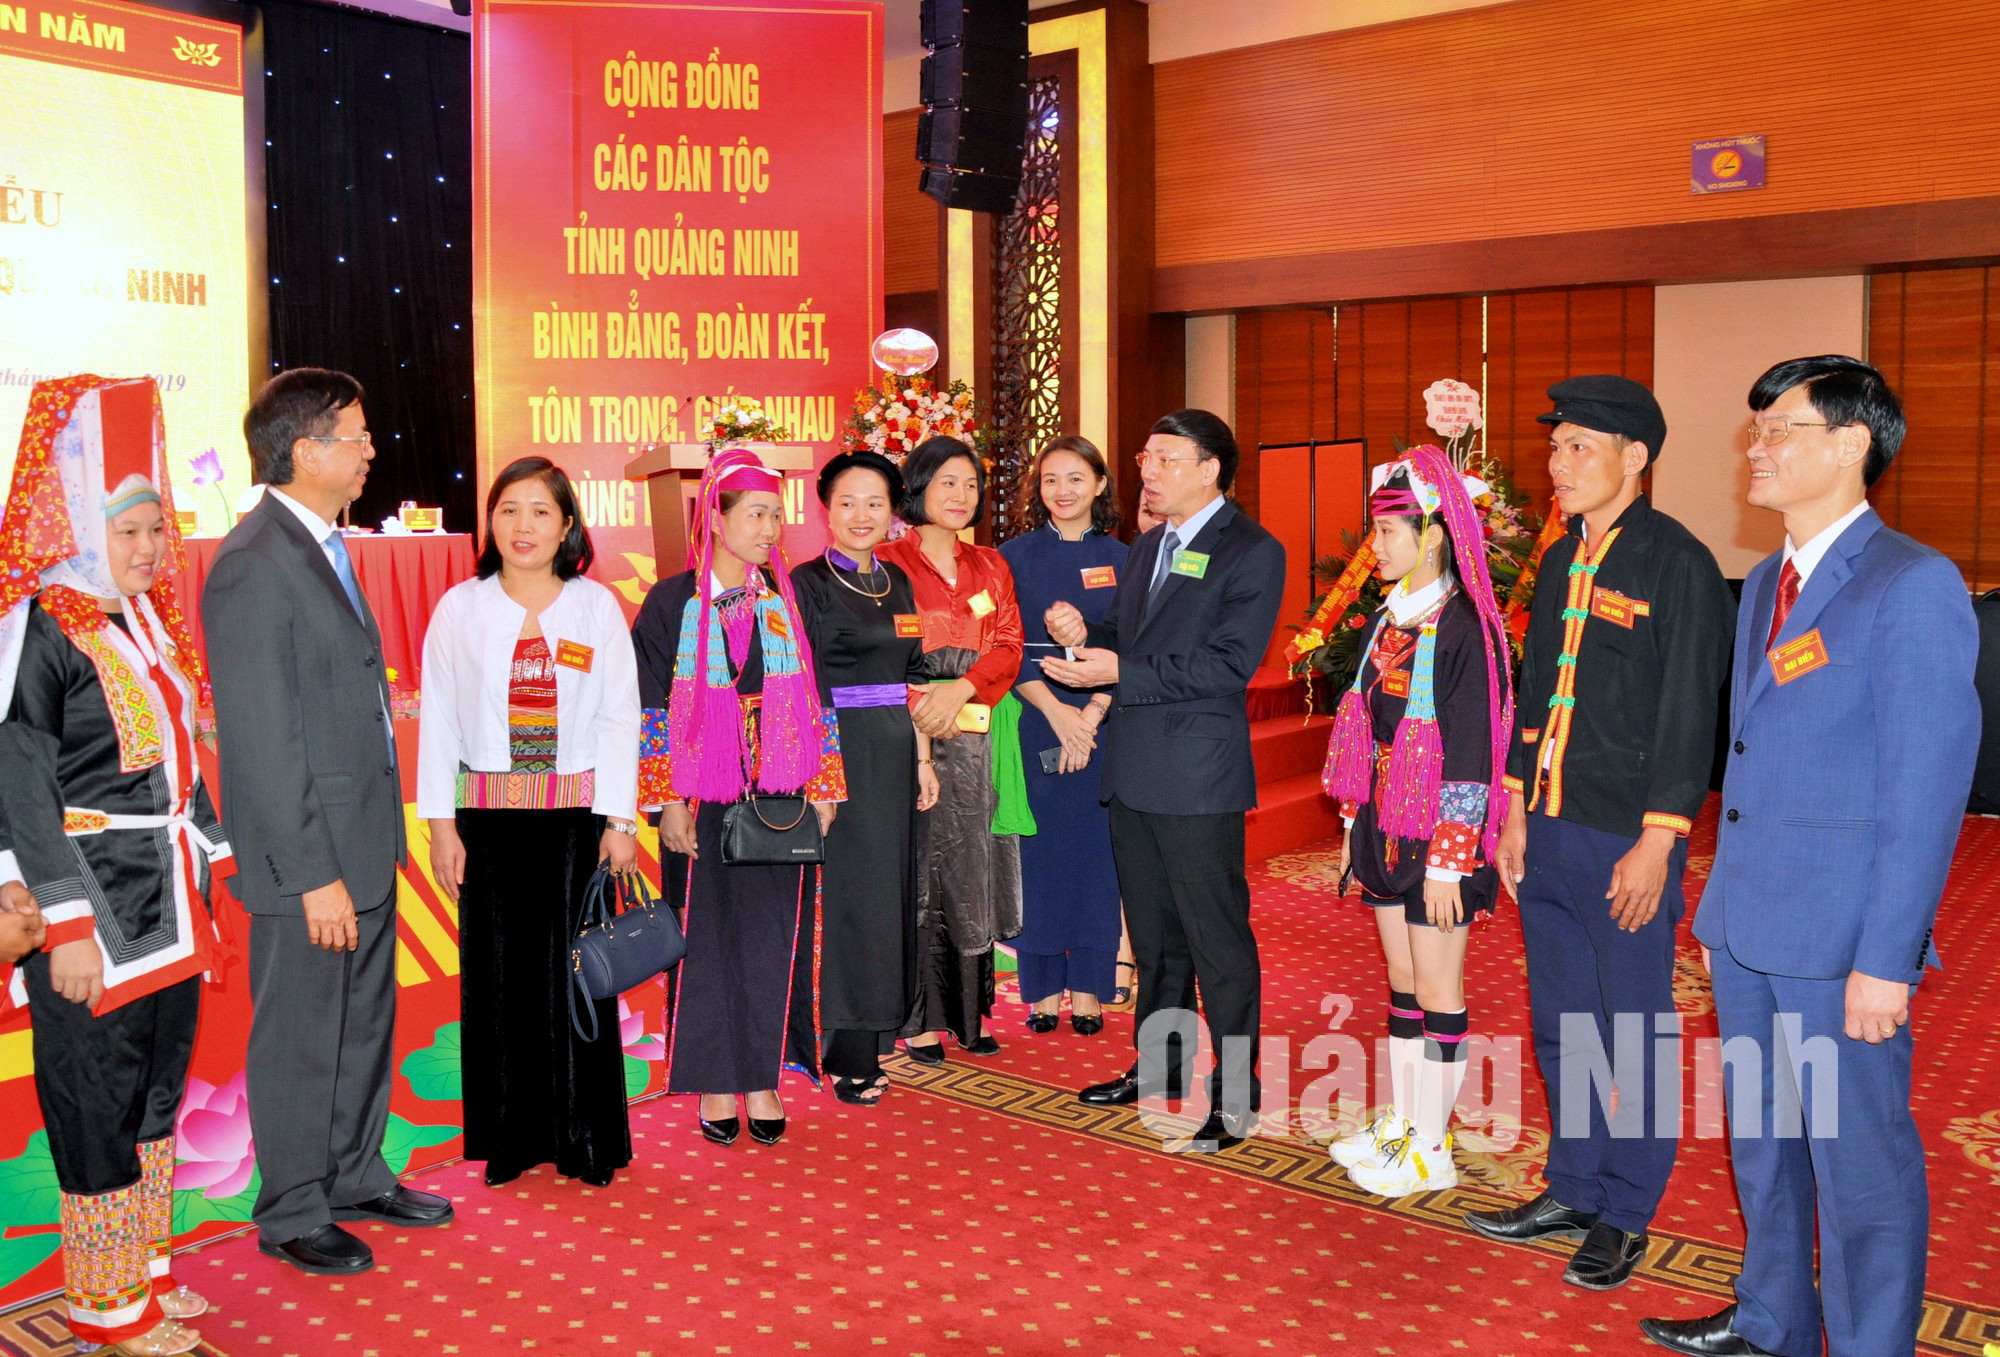 Các đồng chí lãnh đạo Trung ương và tỉnh Quảng Ninh trò chuyện với đại biểu về dự Đại hội đại biểu các DTTS tỉnh Quảng Ninh lần thứ III (10-2019). Ảnh: Minh Hà